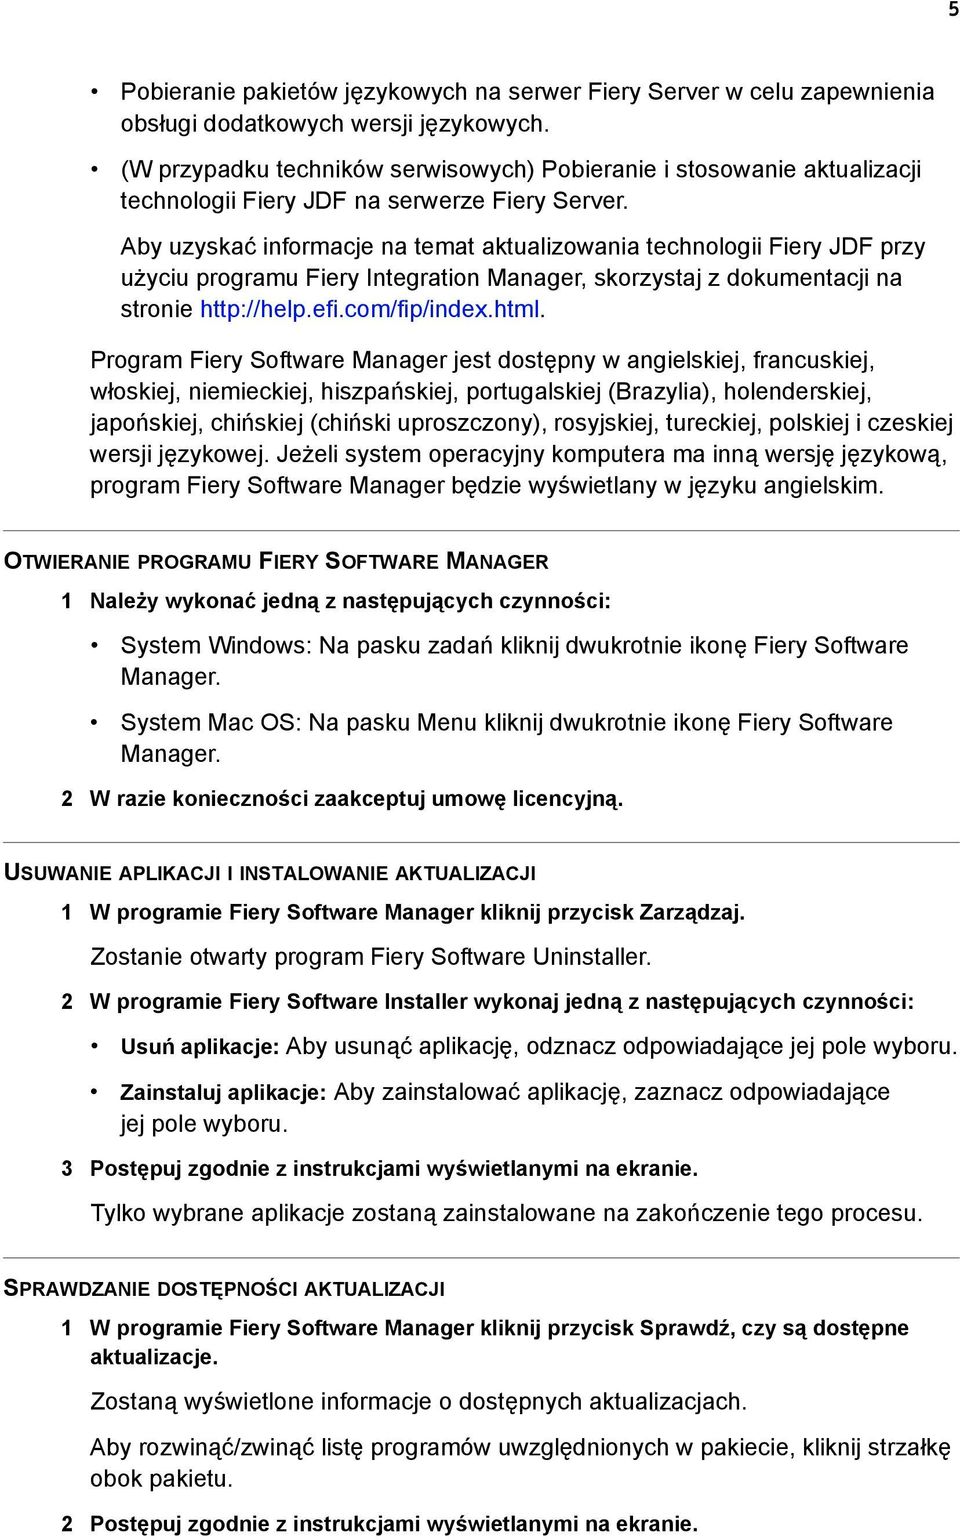 Aby uzyskać informacje na temat aktualizowania technologii Fiery JDF przy użyciu programu Fiery Integration Manager, skorzystaj z dokumentacji na stronie http://help.efi.com/fip/index.html.